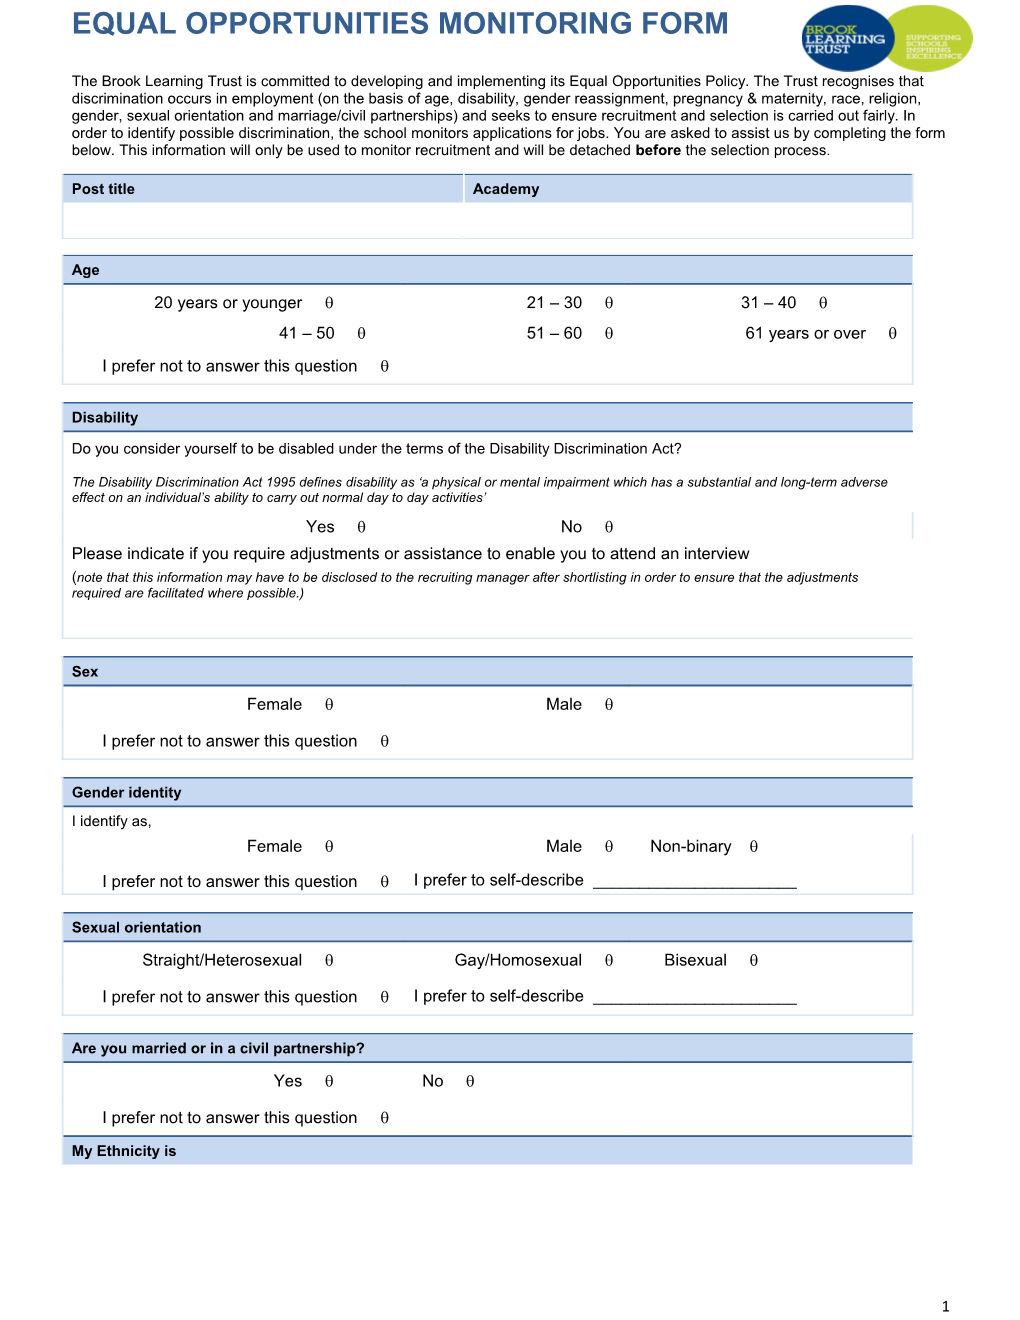 Job Description Form s6